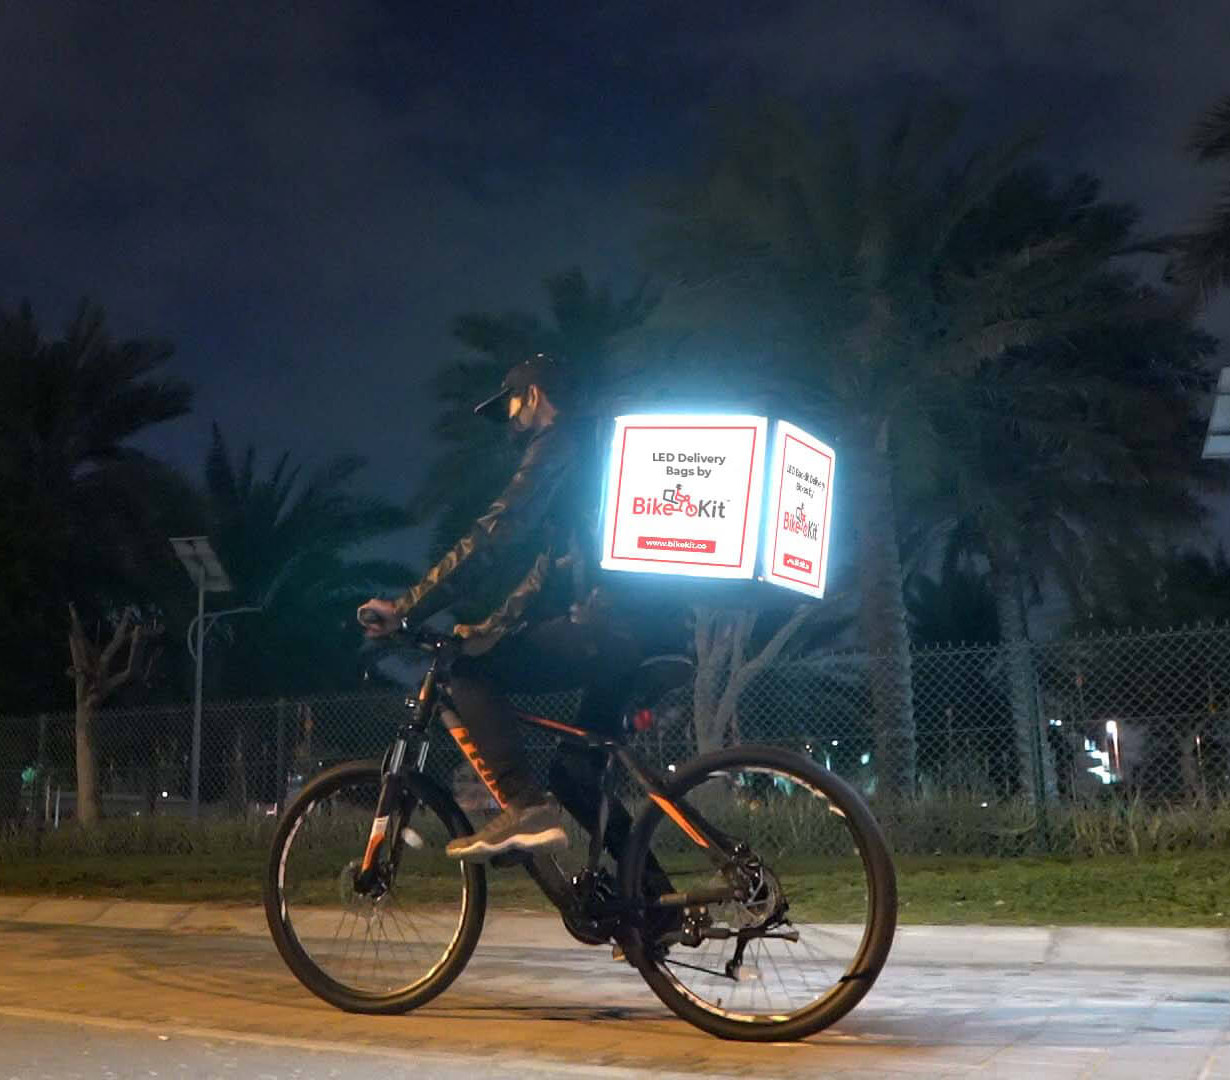 LED Delivery Bag